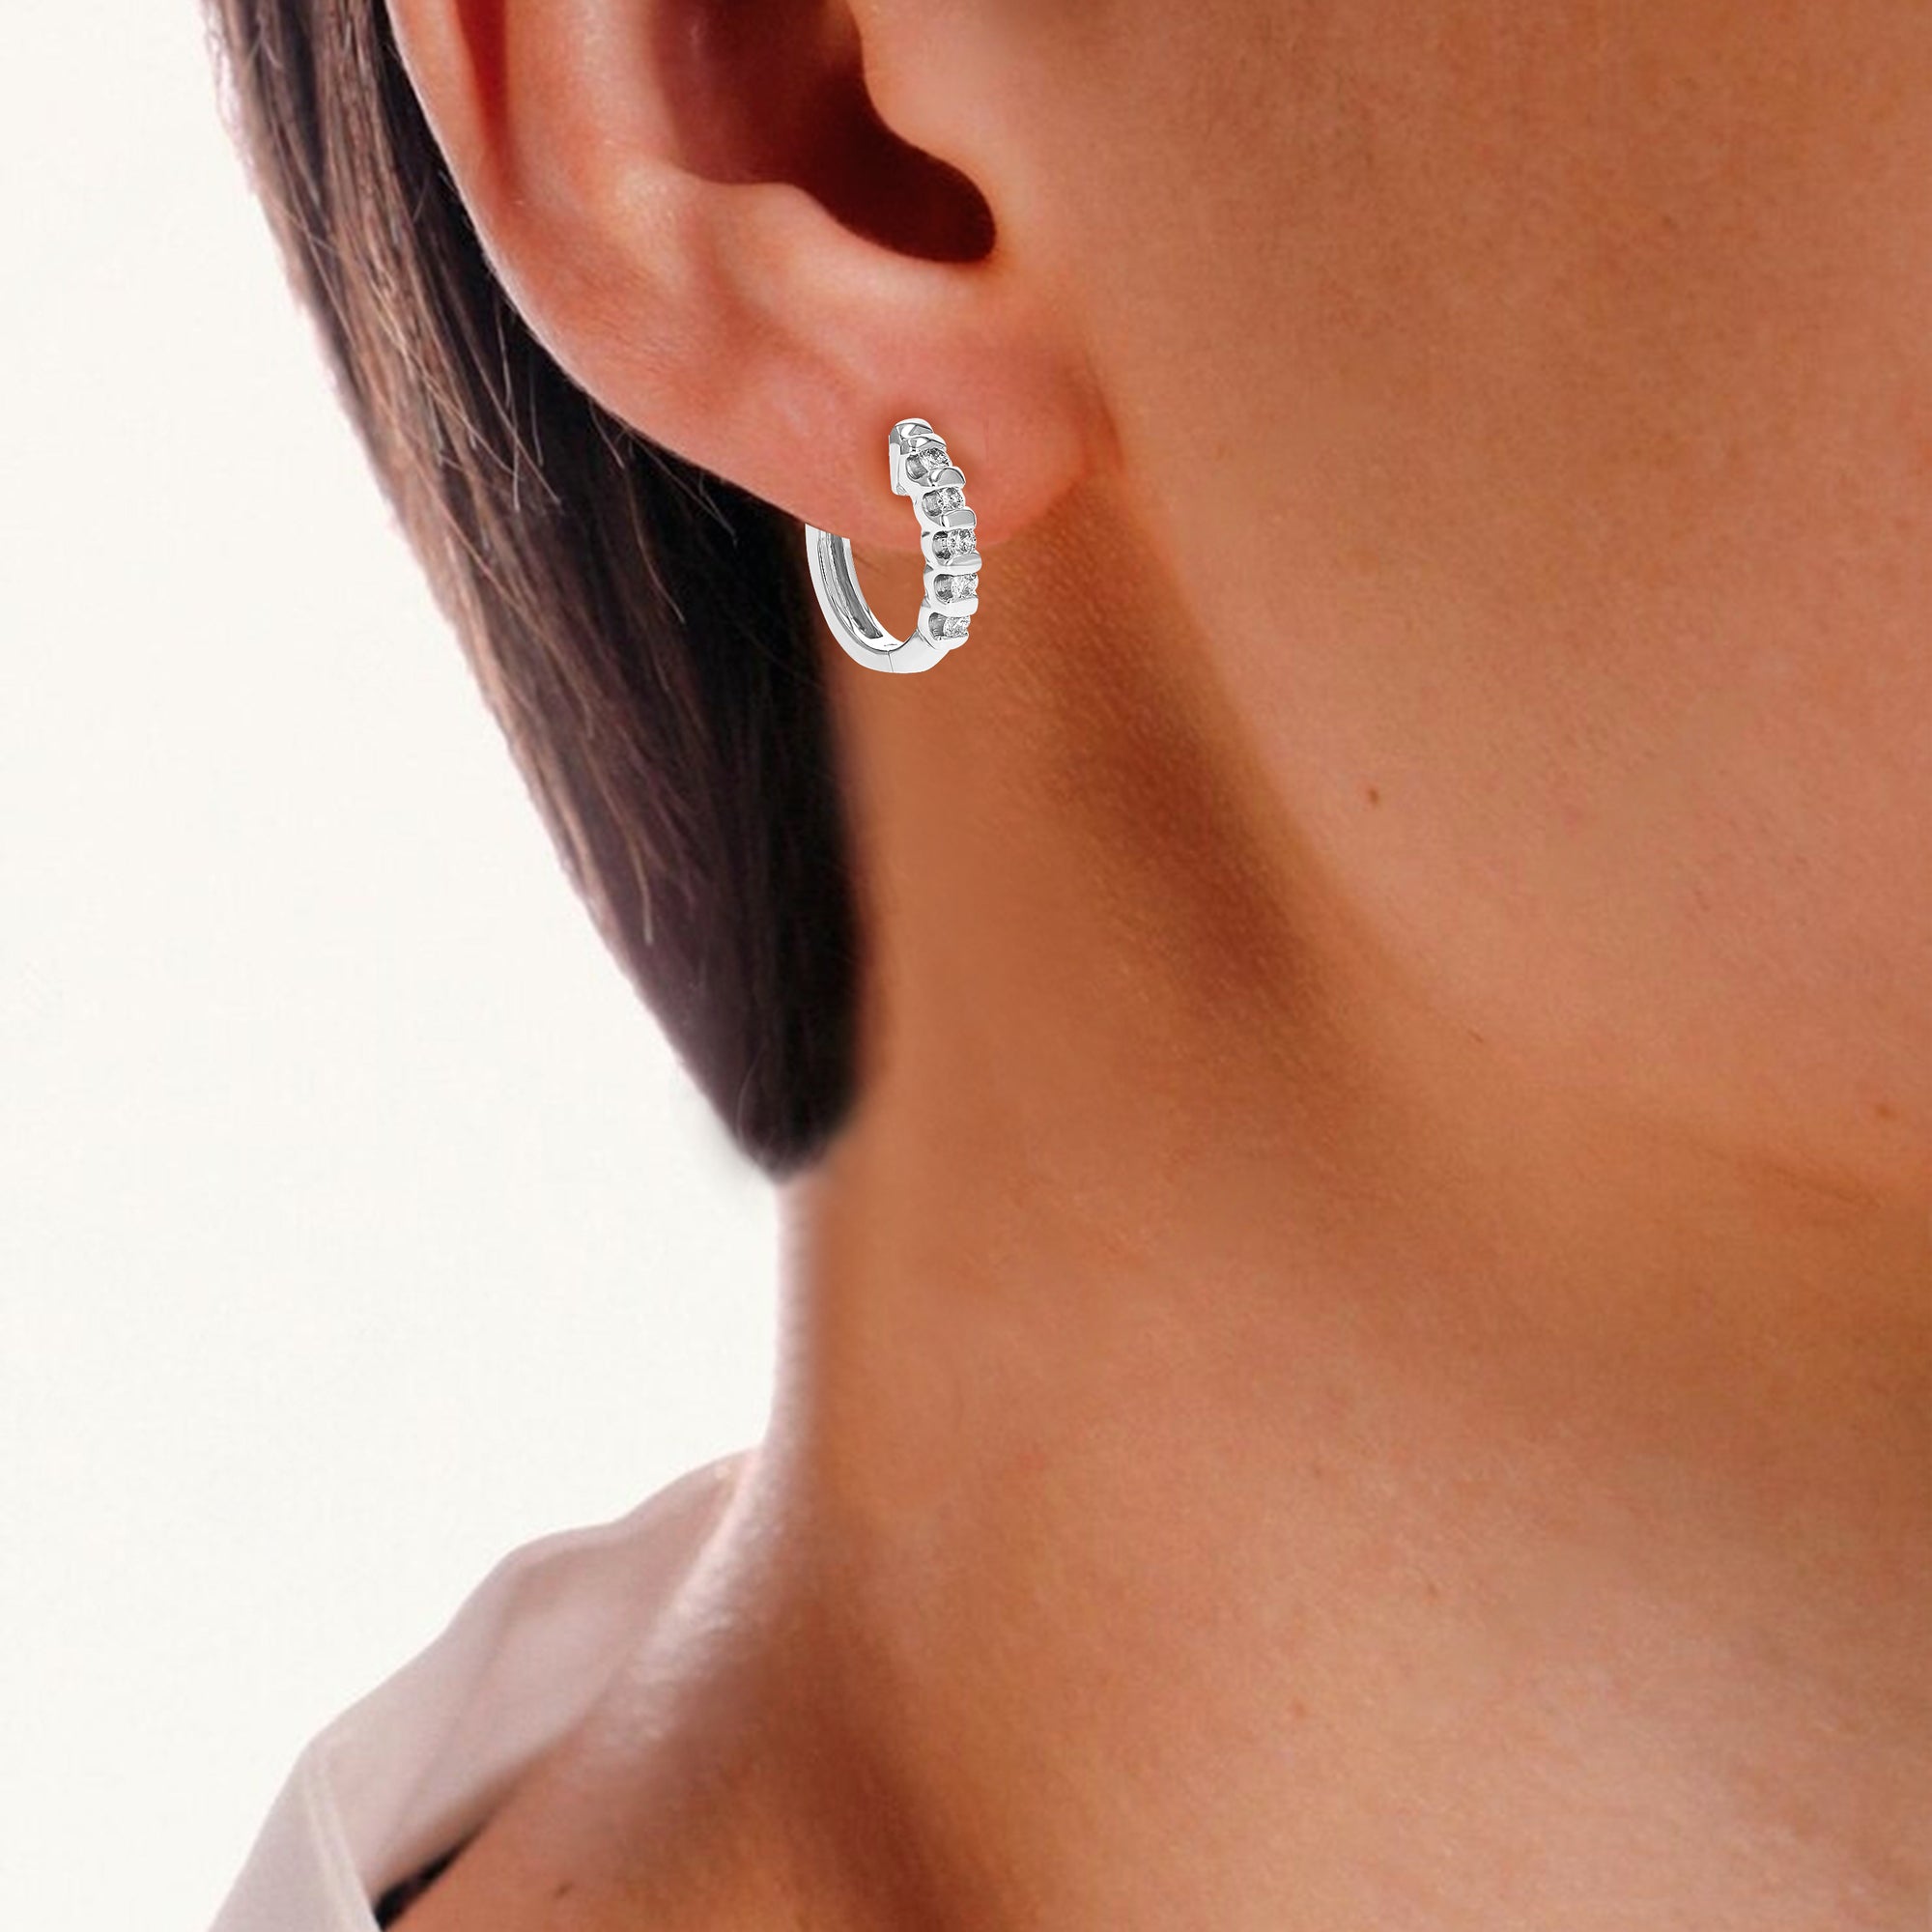 1/4 cttw Diamond Hoop Earrings for Women, Round Lab Grown Diamond Earrings in .925 Sterling Silver, Channel Setting, 1/2 Inch